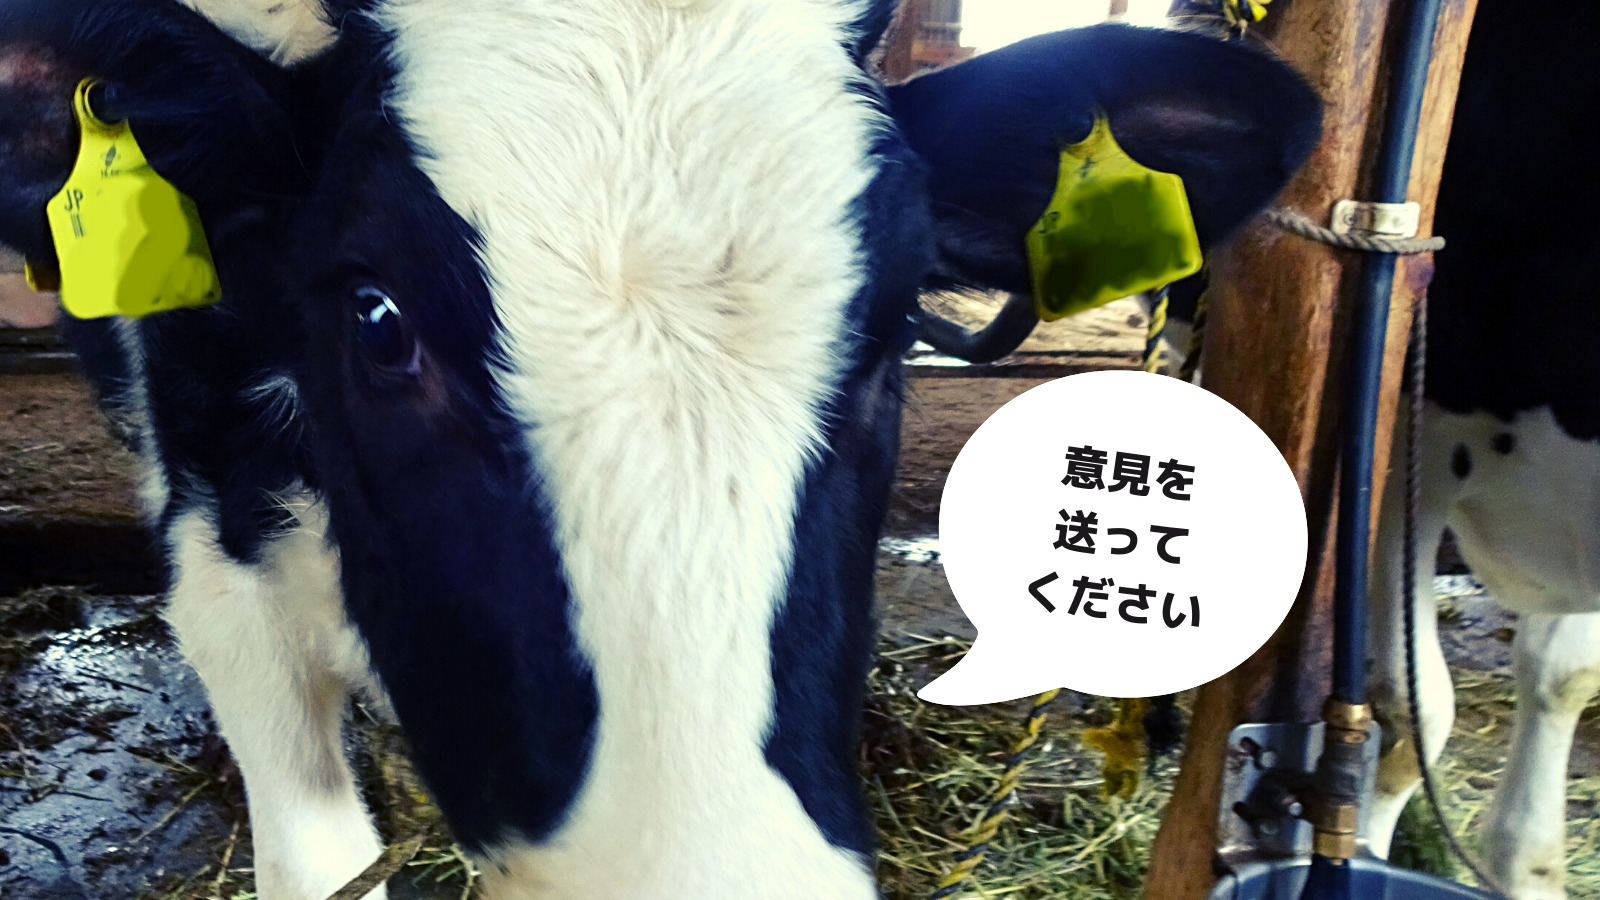 乳用牛の飼養管理に関する指針（案）に対する意見| 畜産動物たちに希望